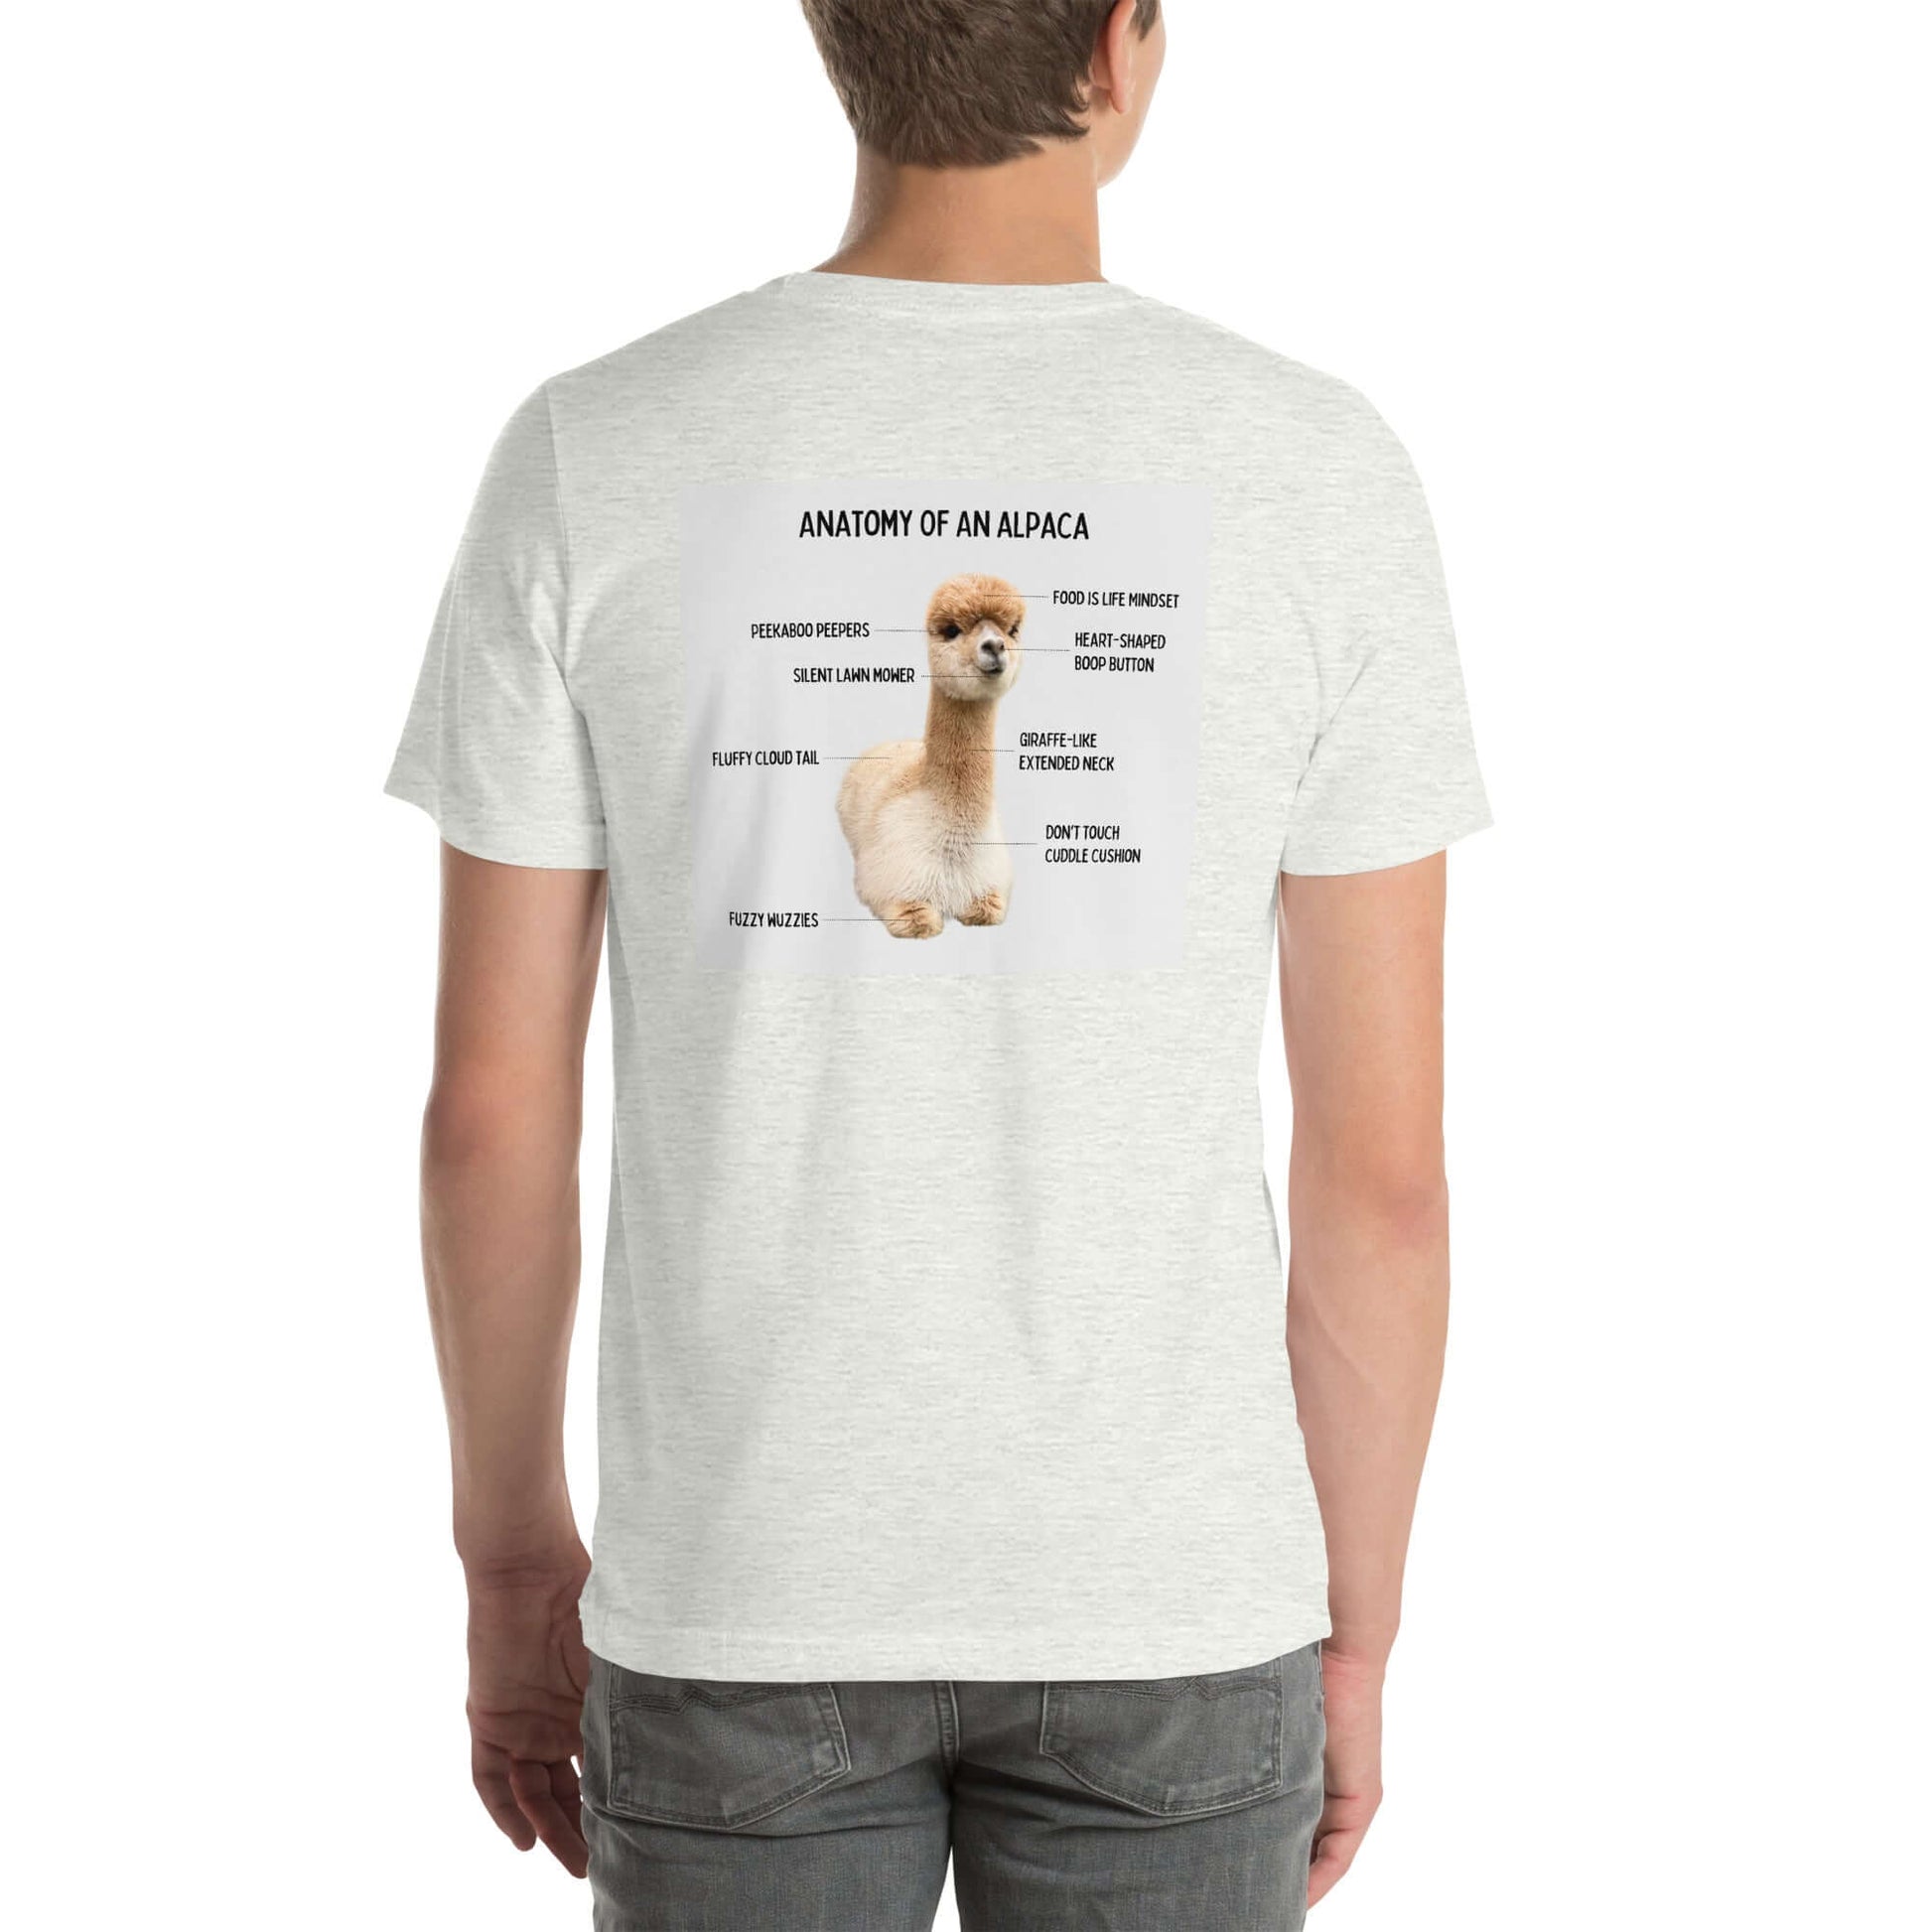 Trendiges Alpaka T-Shirt für Fans und Liebhaber, humorvolles Design